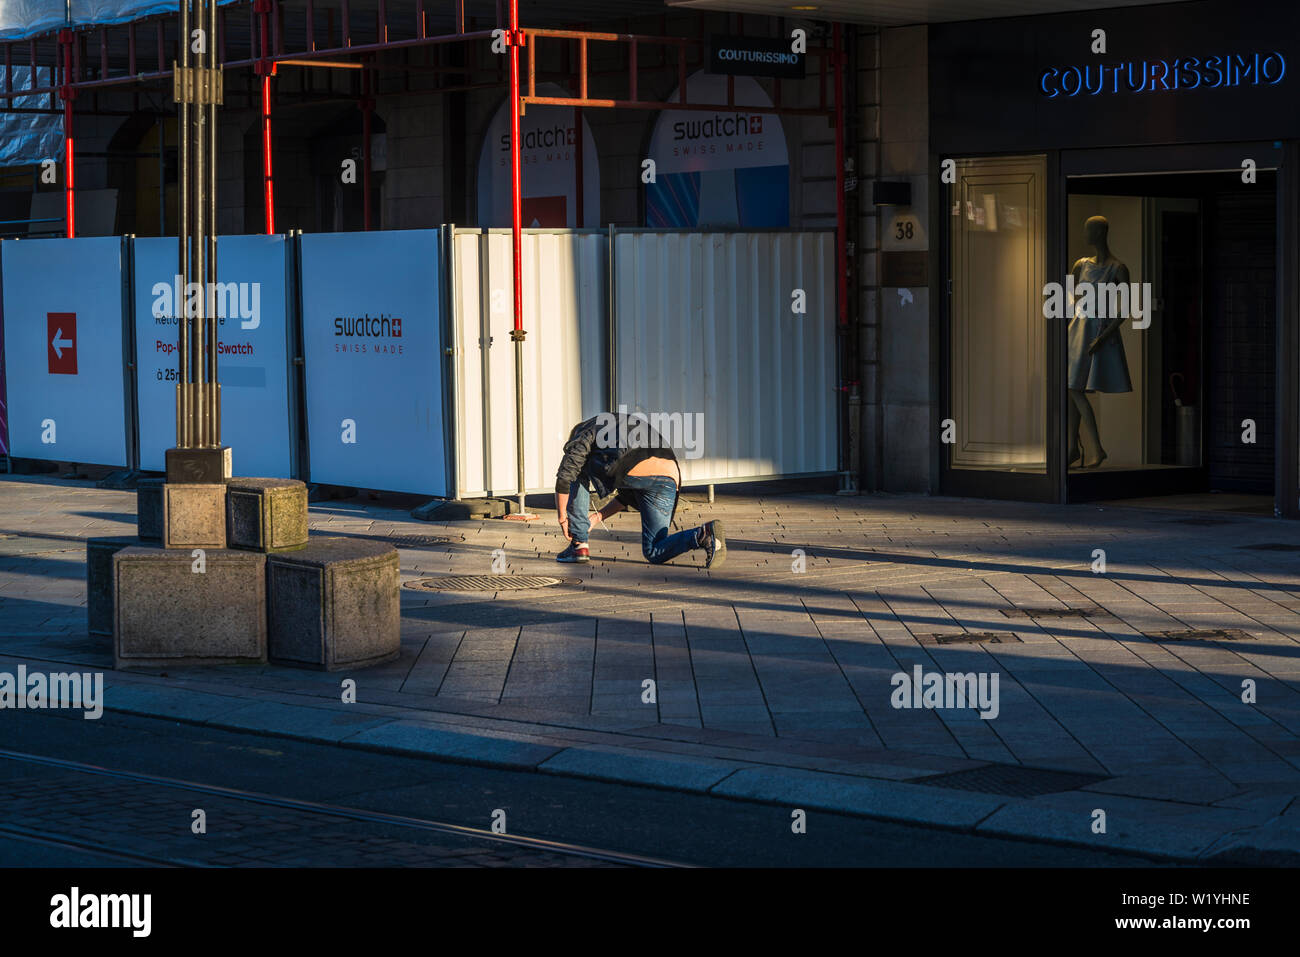 Der Mensch seine Schnürsenkel binden, Rue de la Croix-d'Or, Genf, Schweiz  Stockfotografie - Alamy